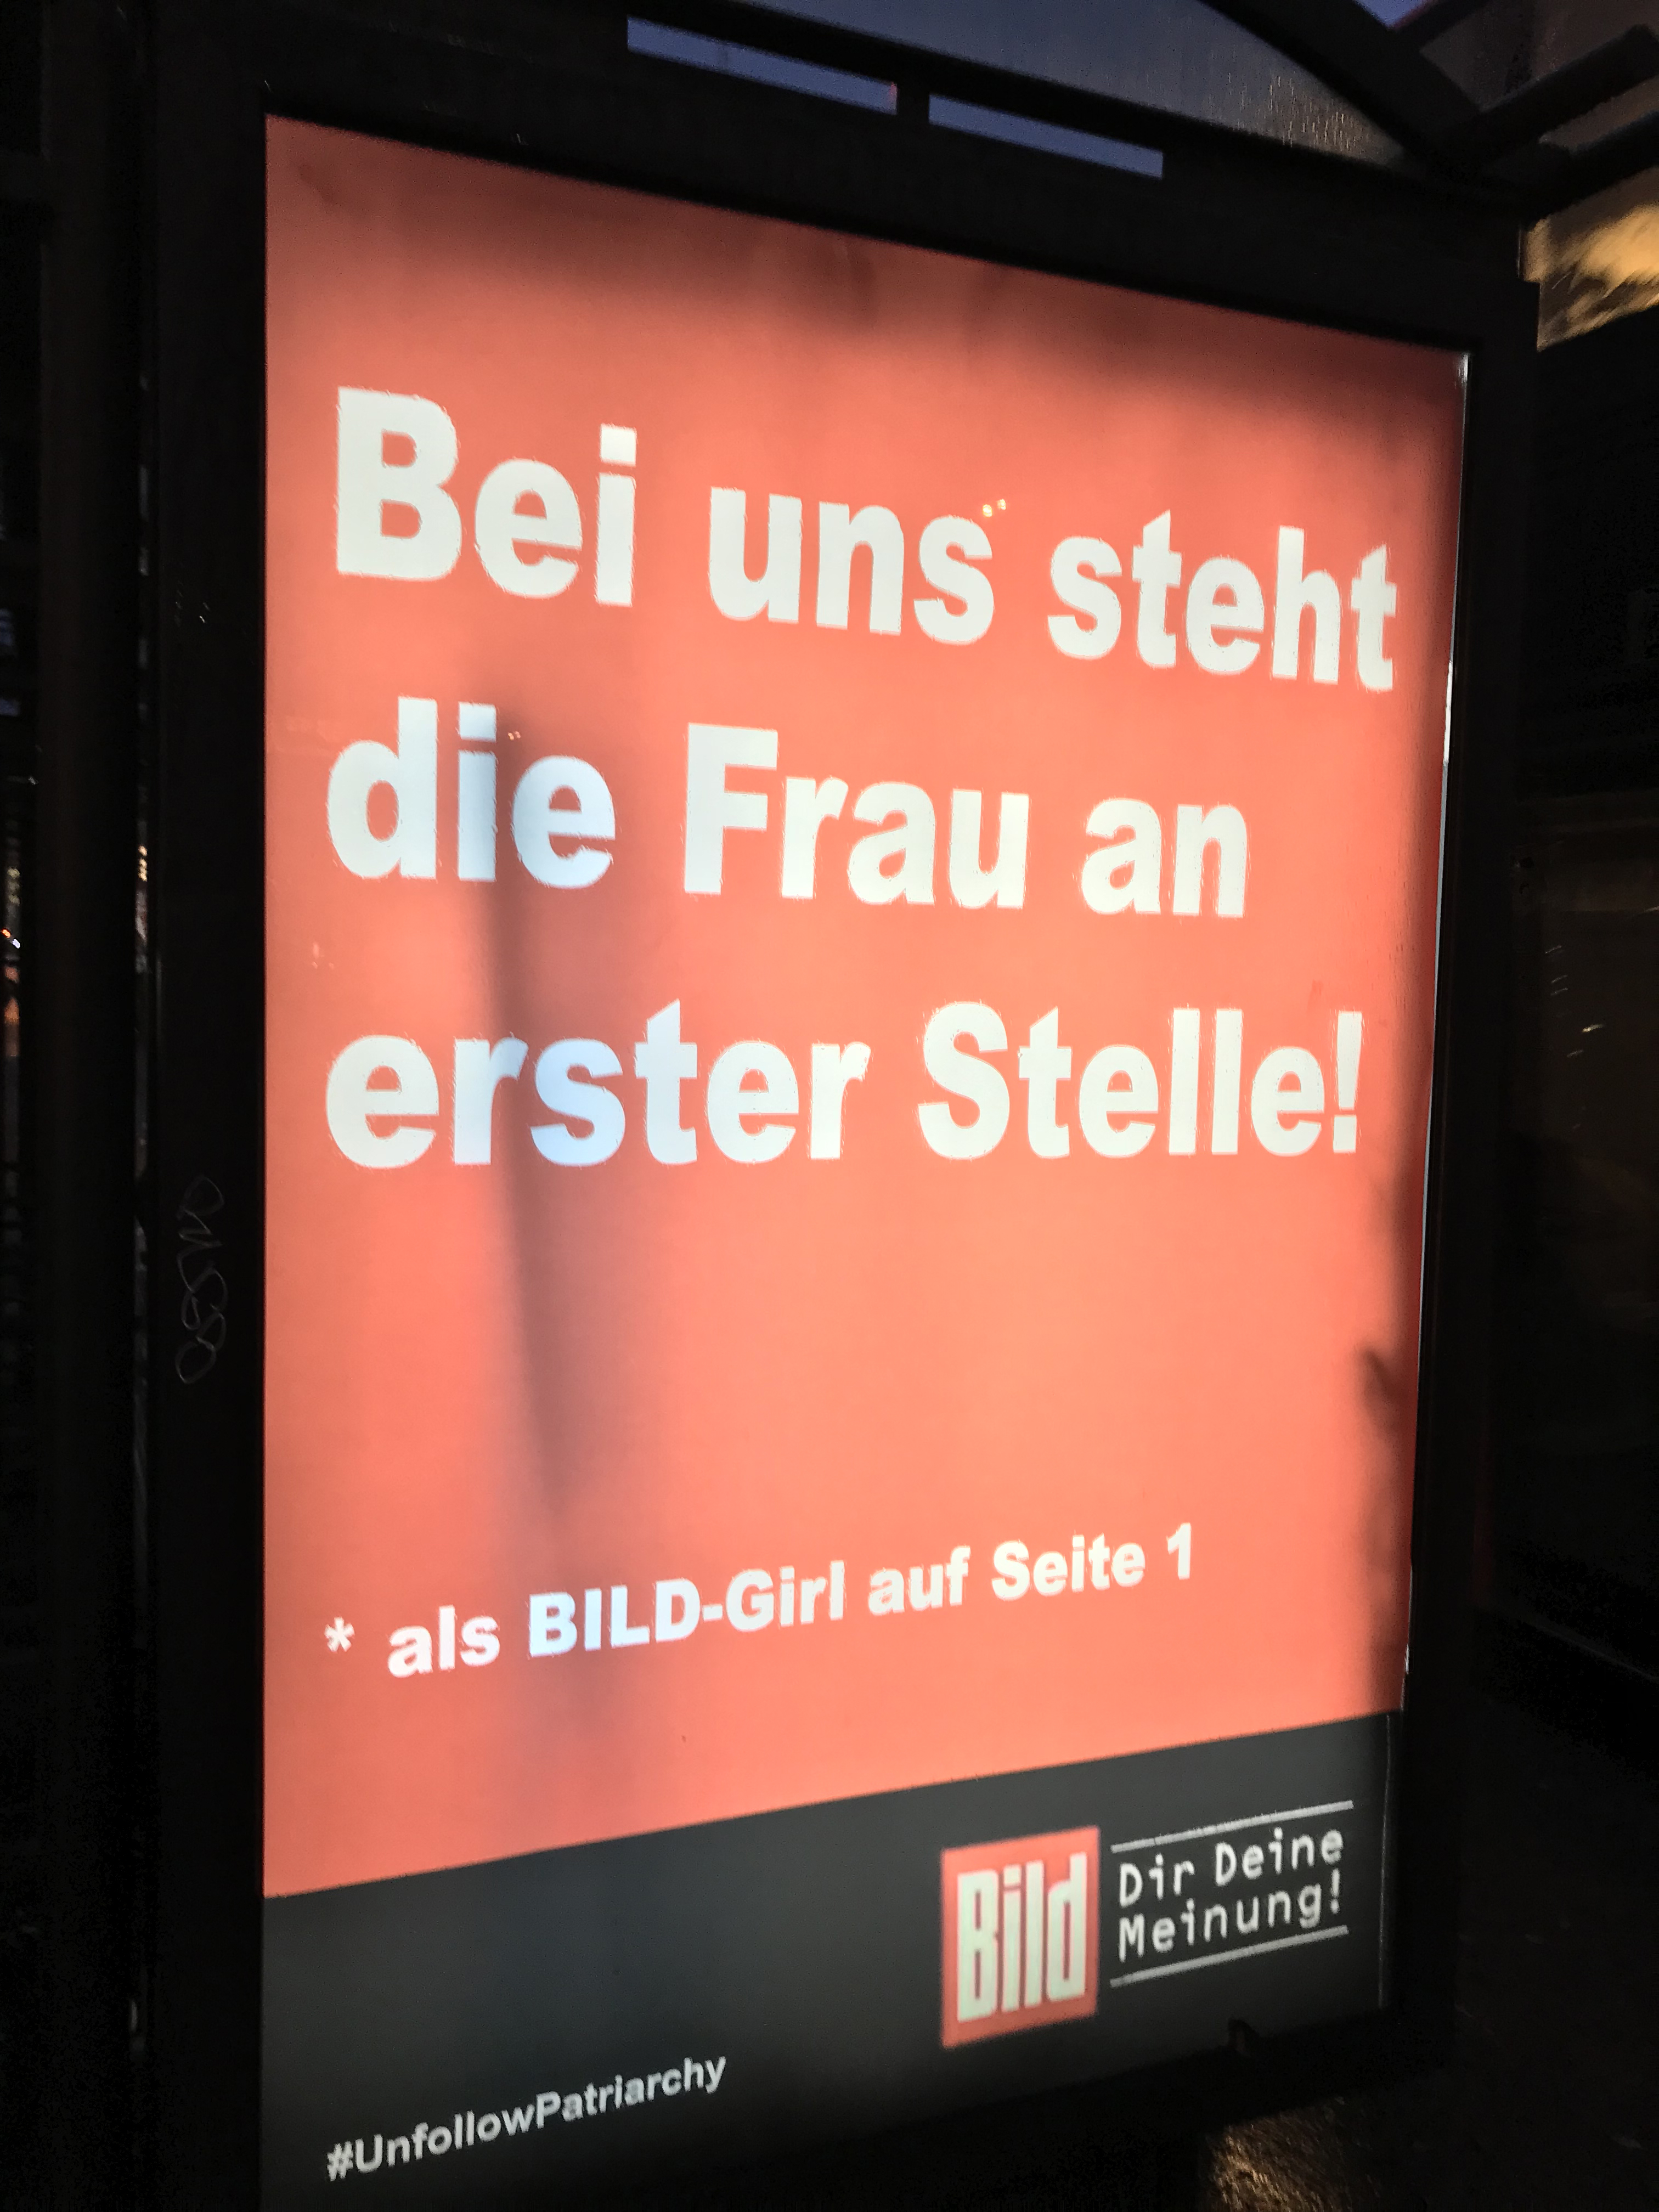 Mit einer provozierenden Werbekampagne hat eine Berliner Künstlergruppe auf Sexismus in den Medien und der Werbung hingewiesen. Foto: © Frank Nicolai